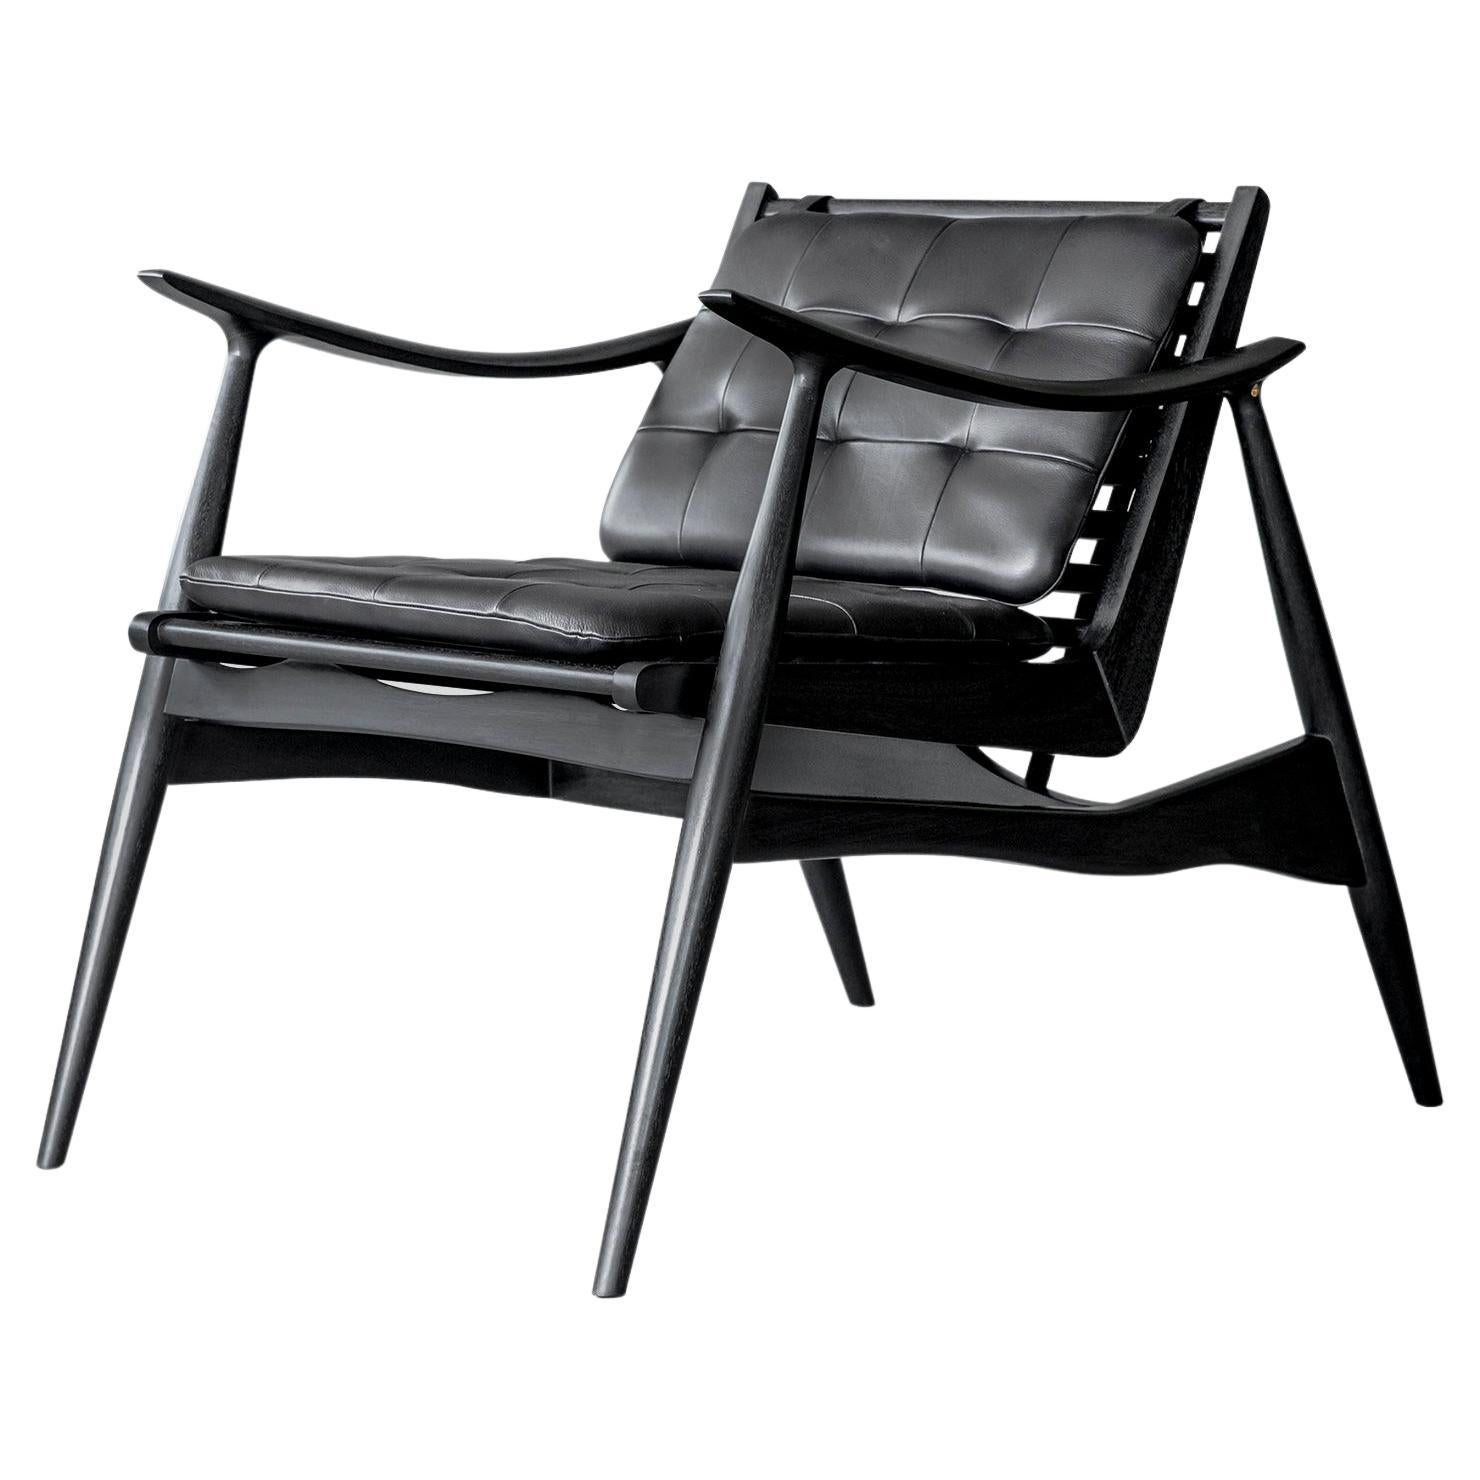 Chaise longue Atra noire d'Atra Design